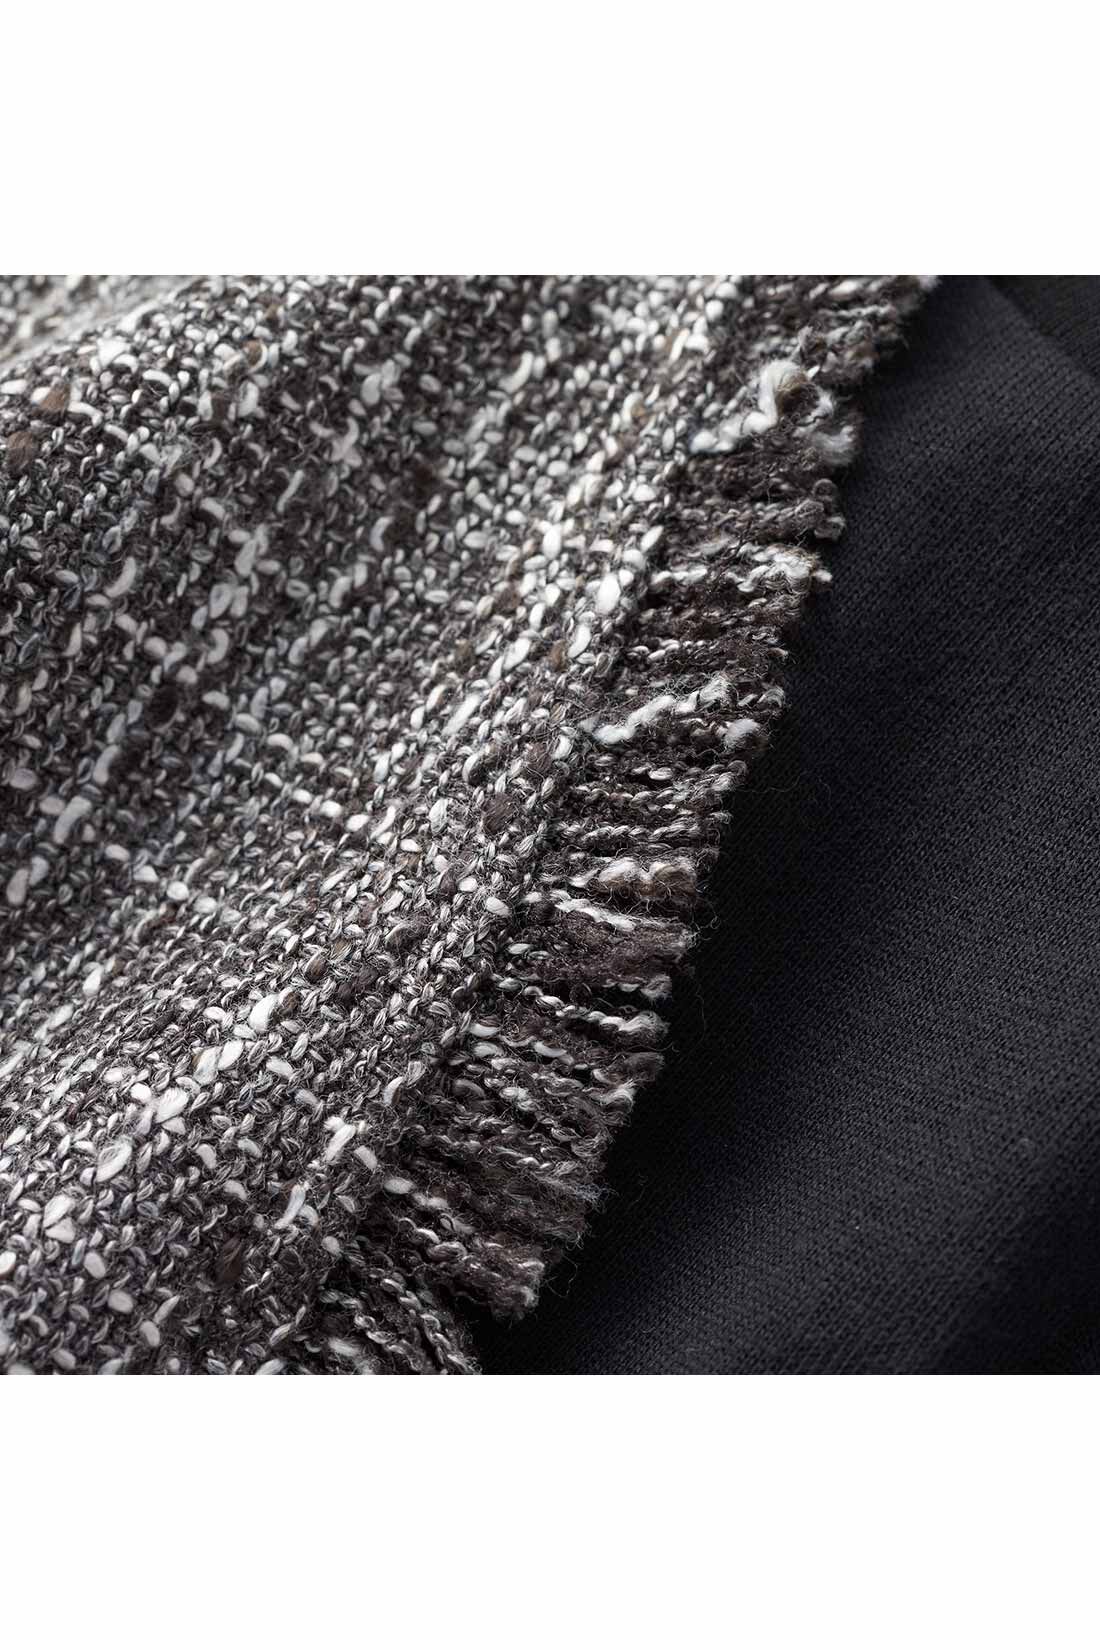 IEDIT|IEDIT[イディット]　こなれコーデがかなう ツイードベストと長袖ロゴTシャツのセット〈ブラック〉|数種の糸で表情豊かに織り上げたツイード素材。ネックやアームホールまわりのフリンジがこなれた印象に。